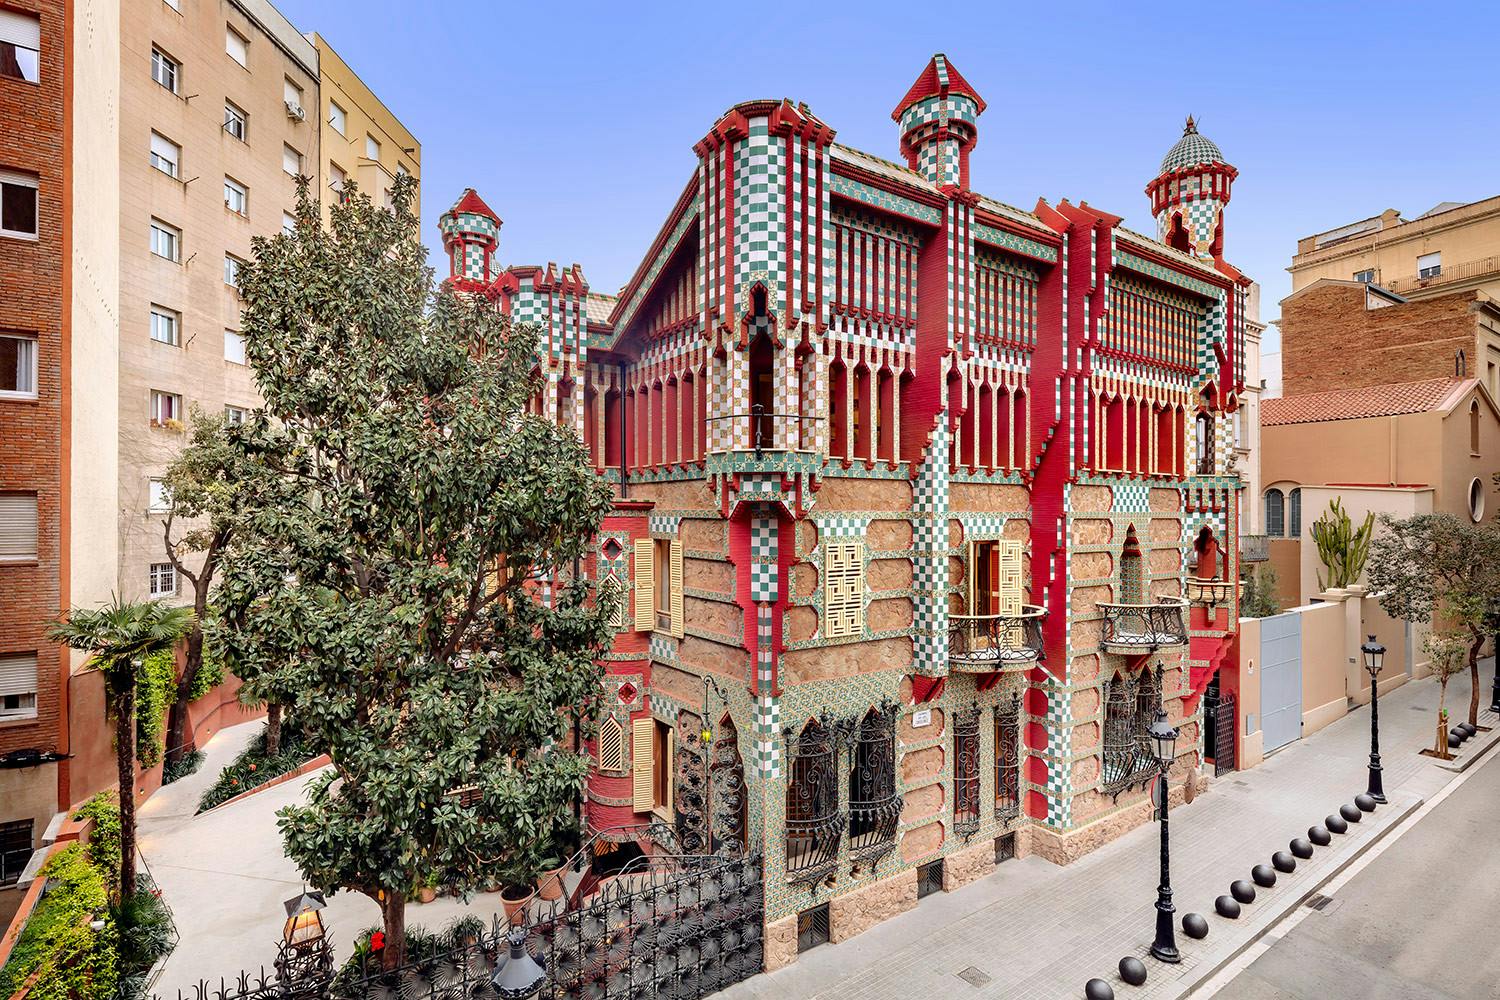 Casa Vicens Gaudi General view.jpg